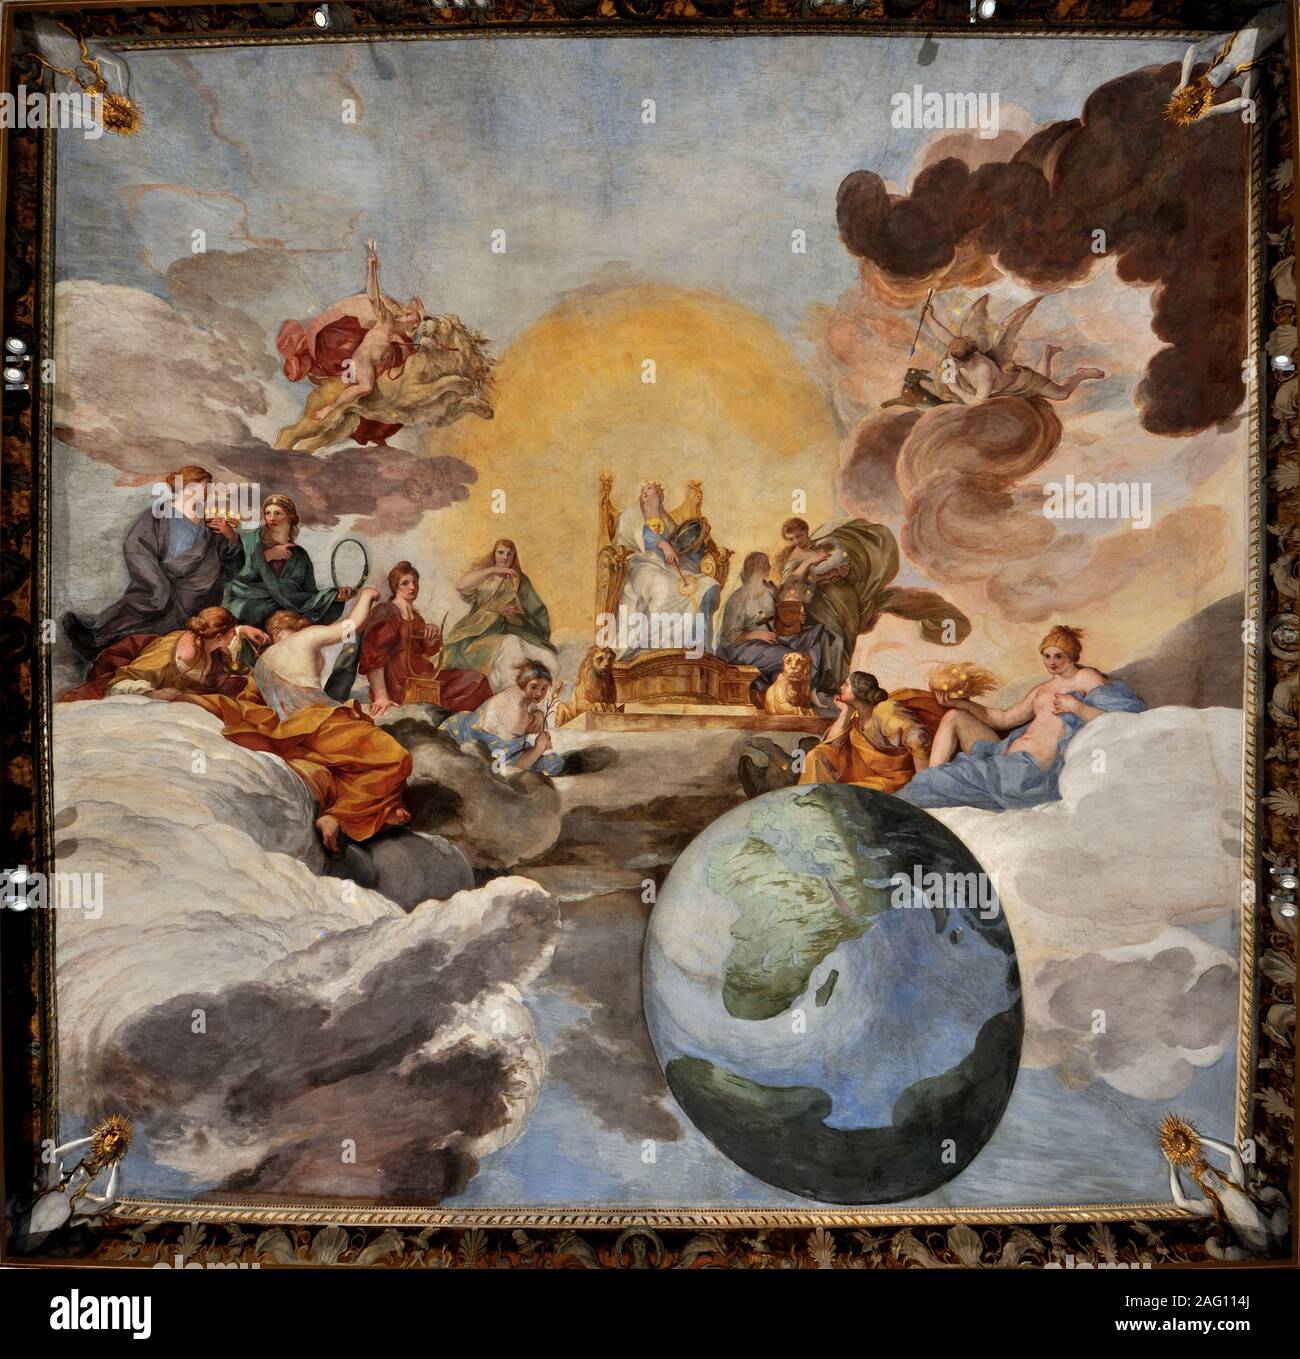 The Triumph of Divine Wisdom, 1629-1631. Found in the Collection of Galleria Nazionale d'Arte Antica, Rome. Stock Photo